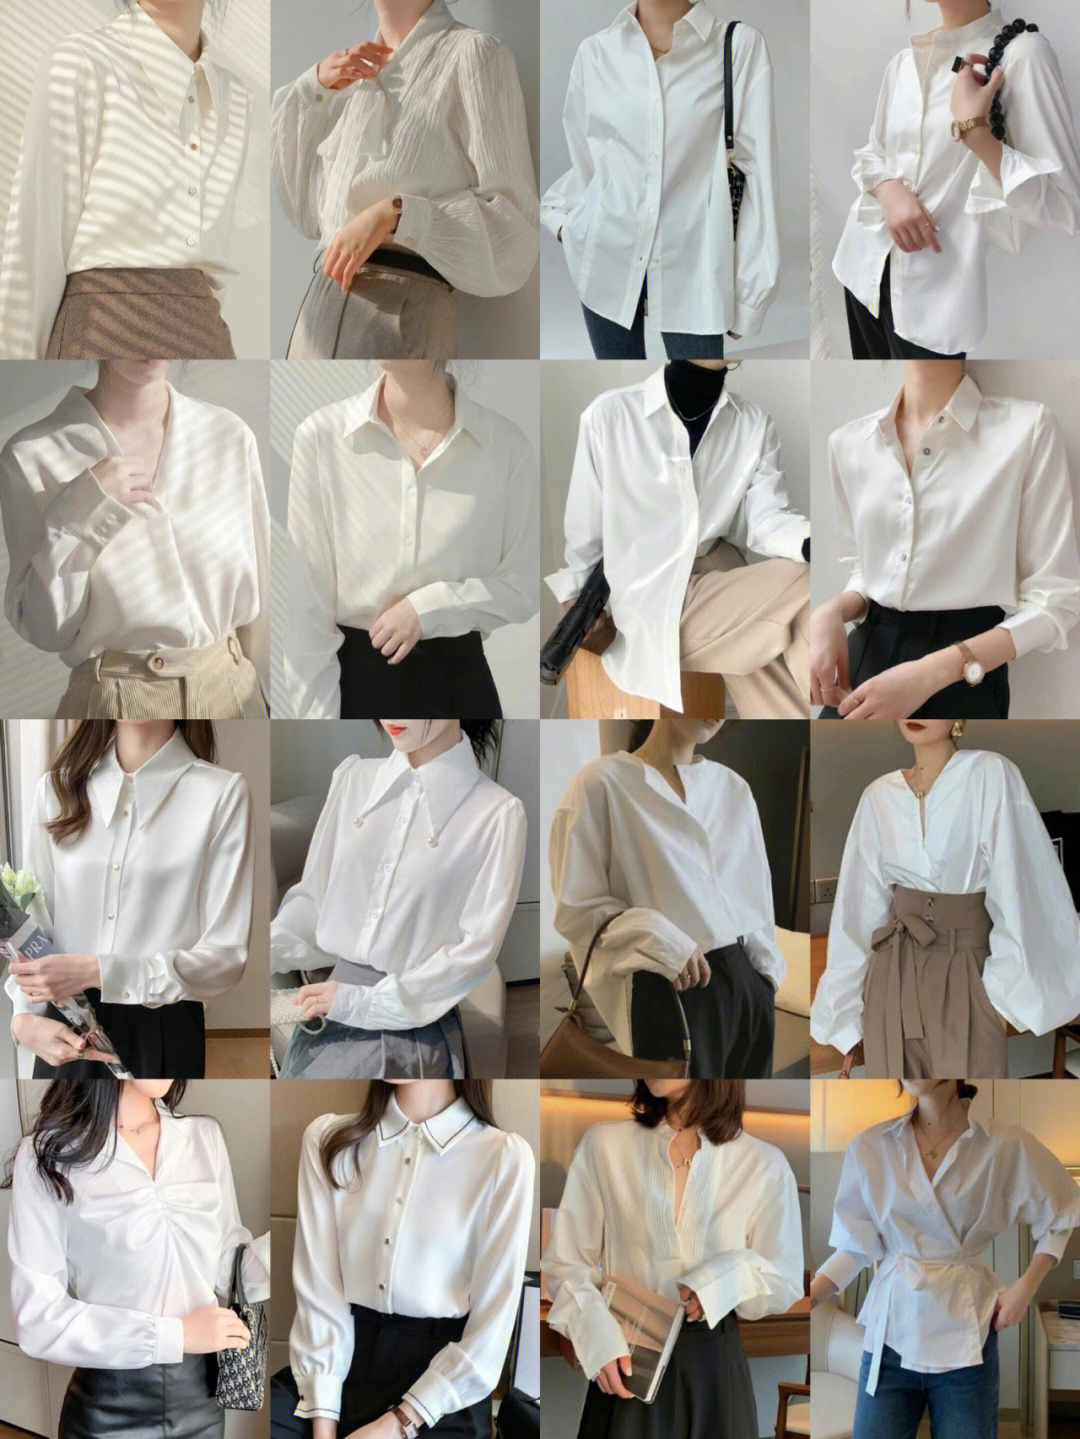 超值白 色春夏穿搭 白色衣服少不了姐妹们选到满意的款式没有呢?